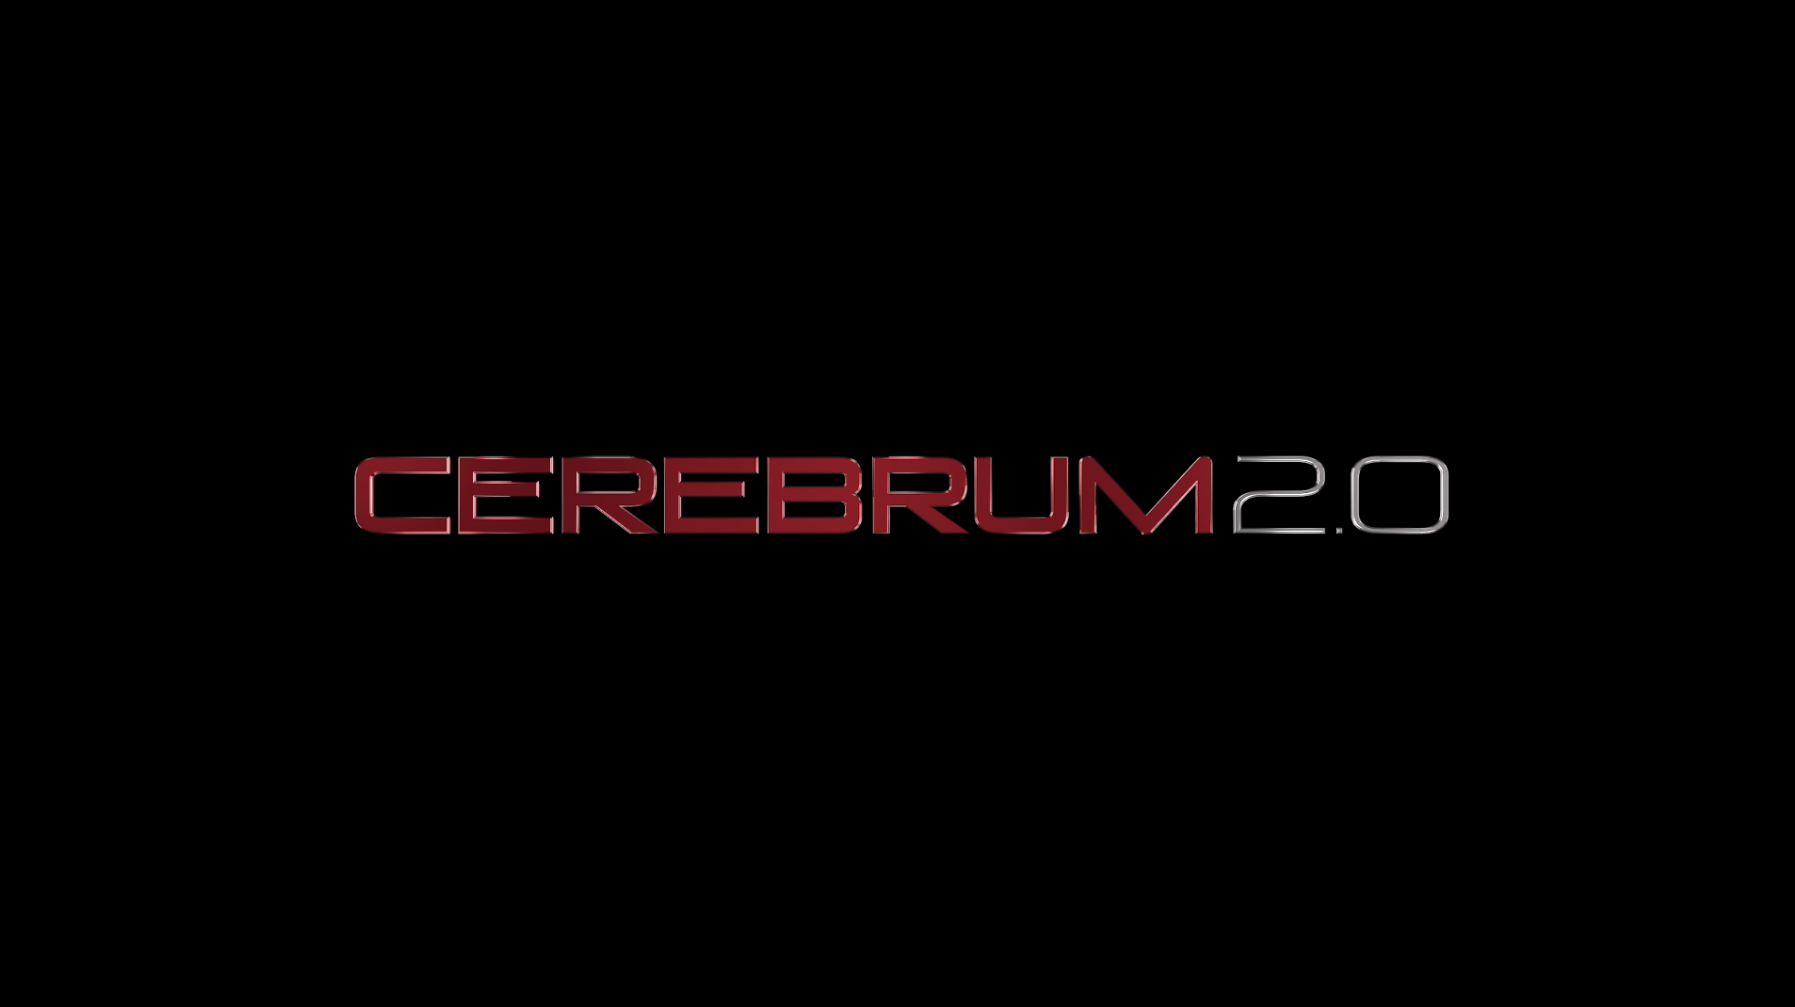 Cerebrum 2.0 logo